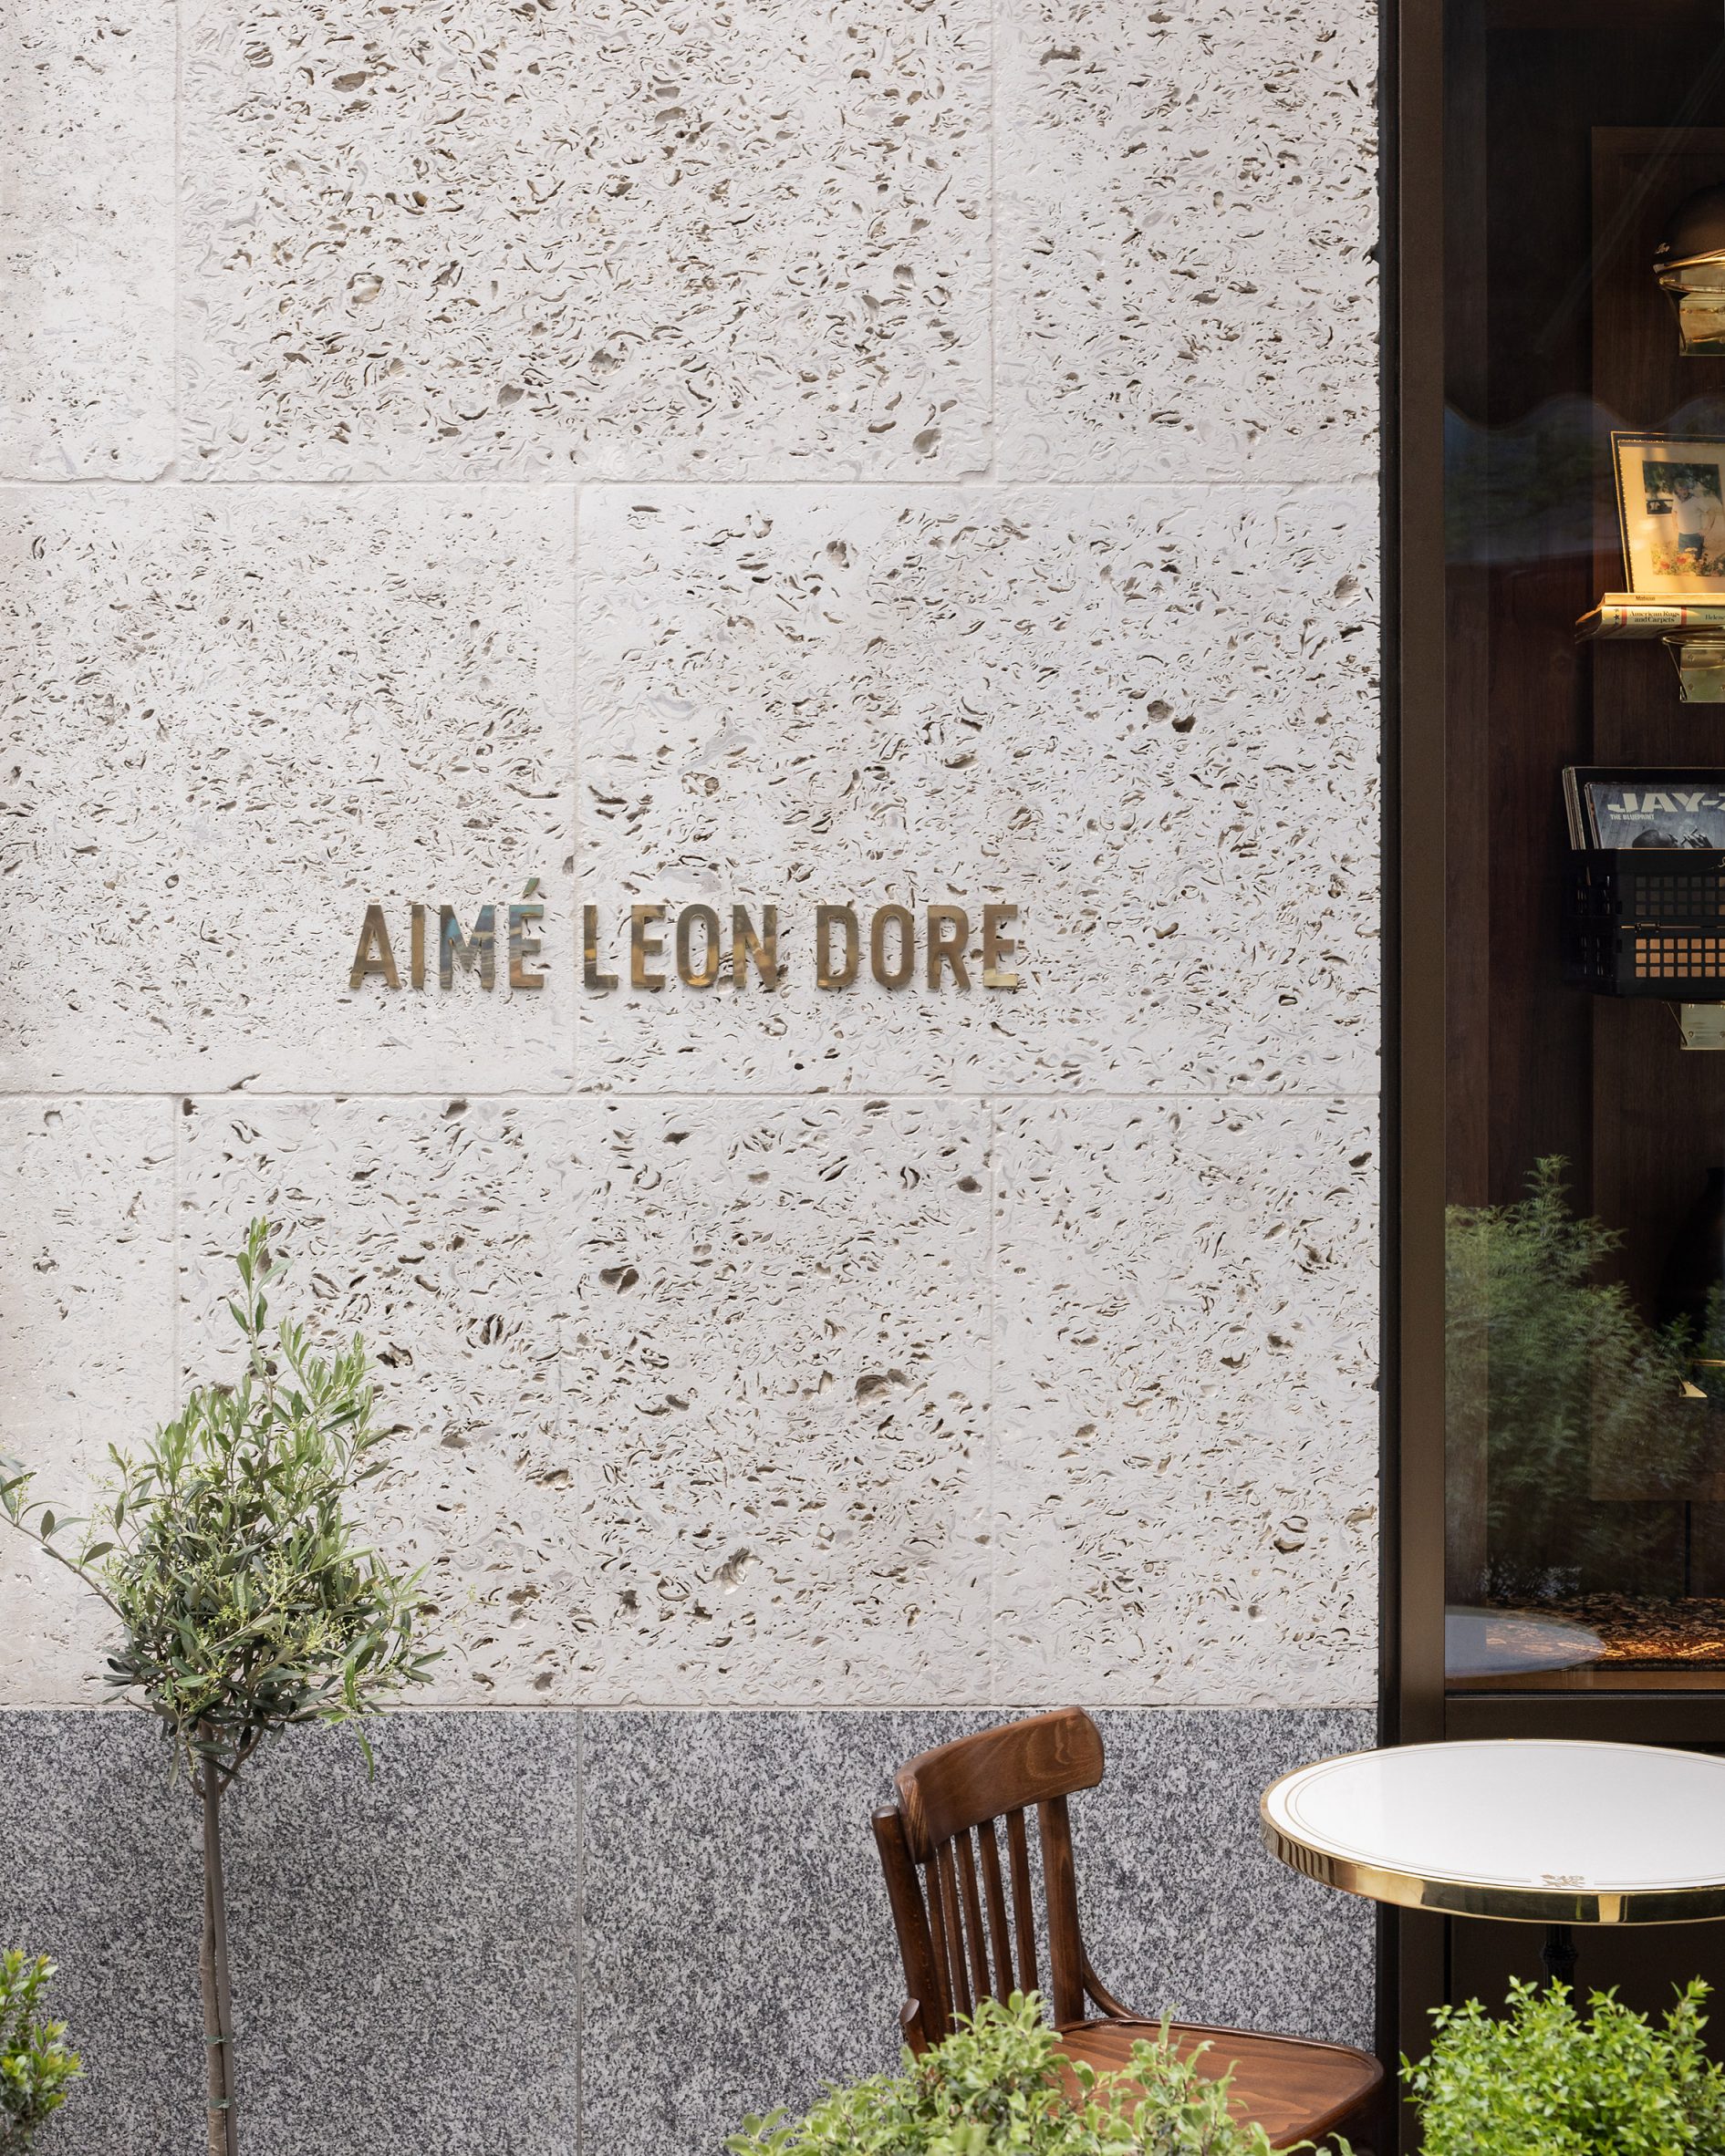 Aimé Leon Dore's London boutique homages architect Adolf Loos